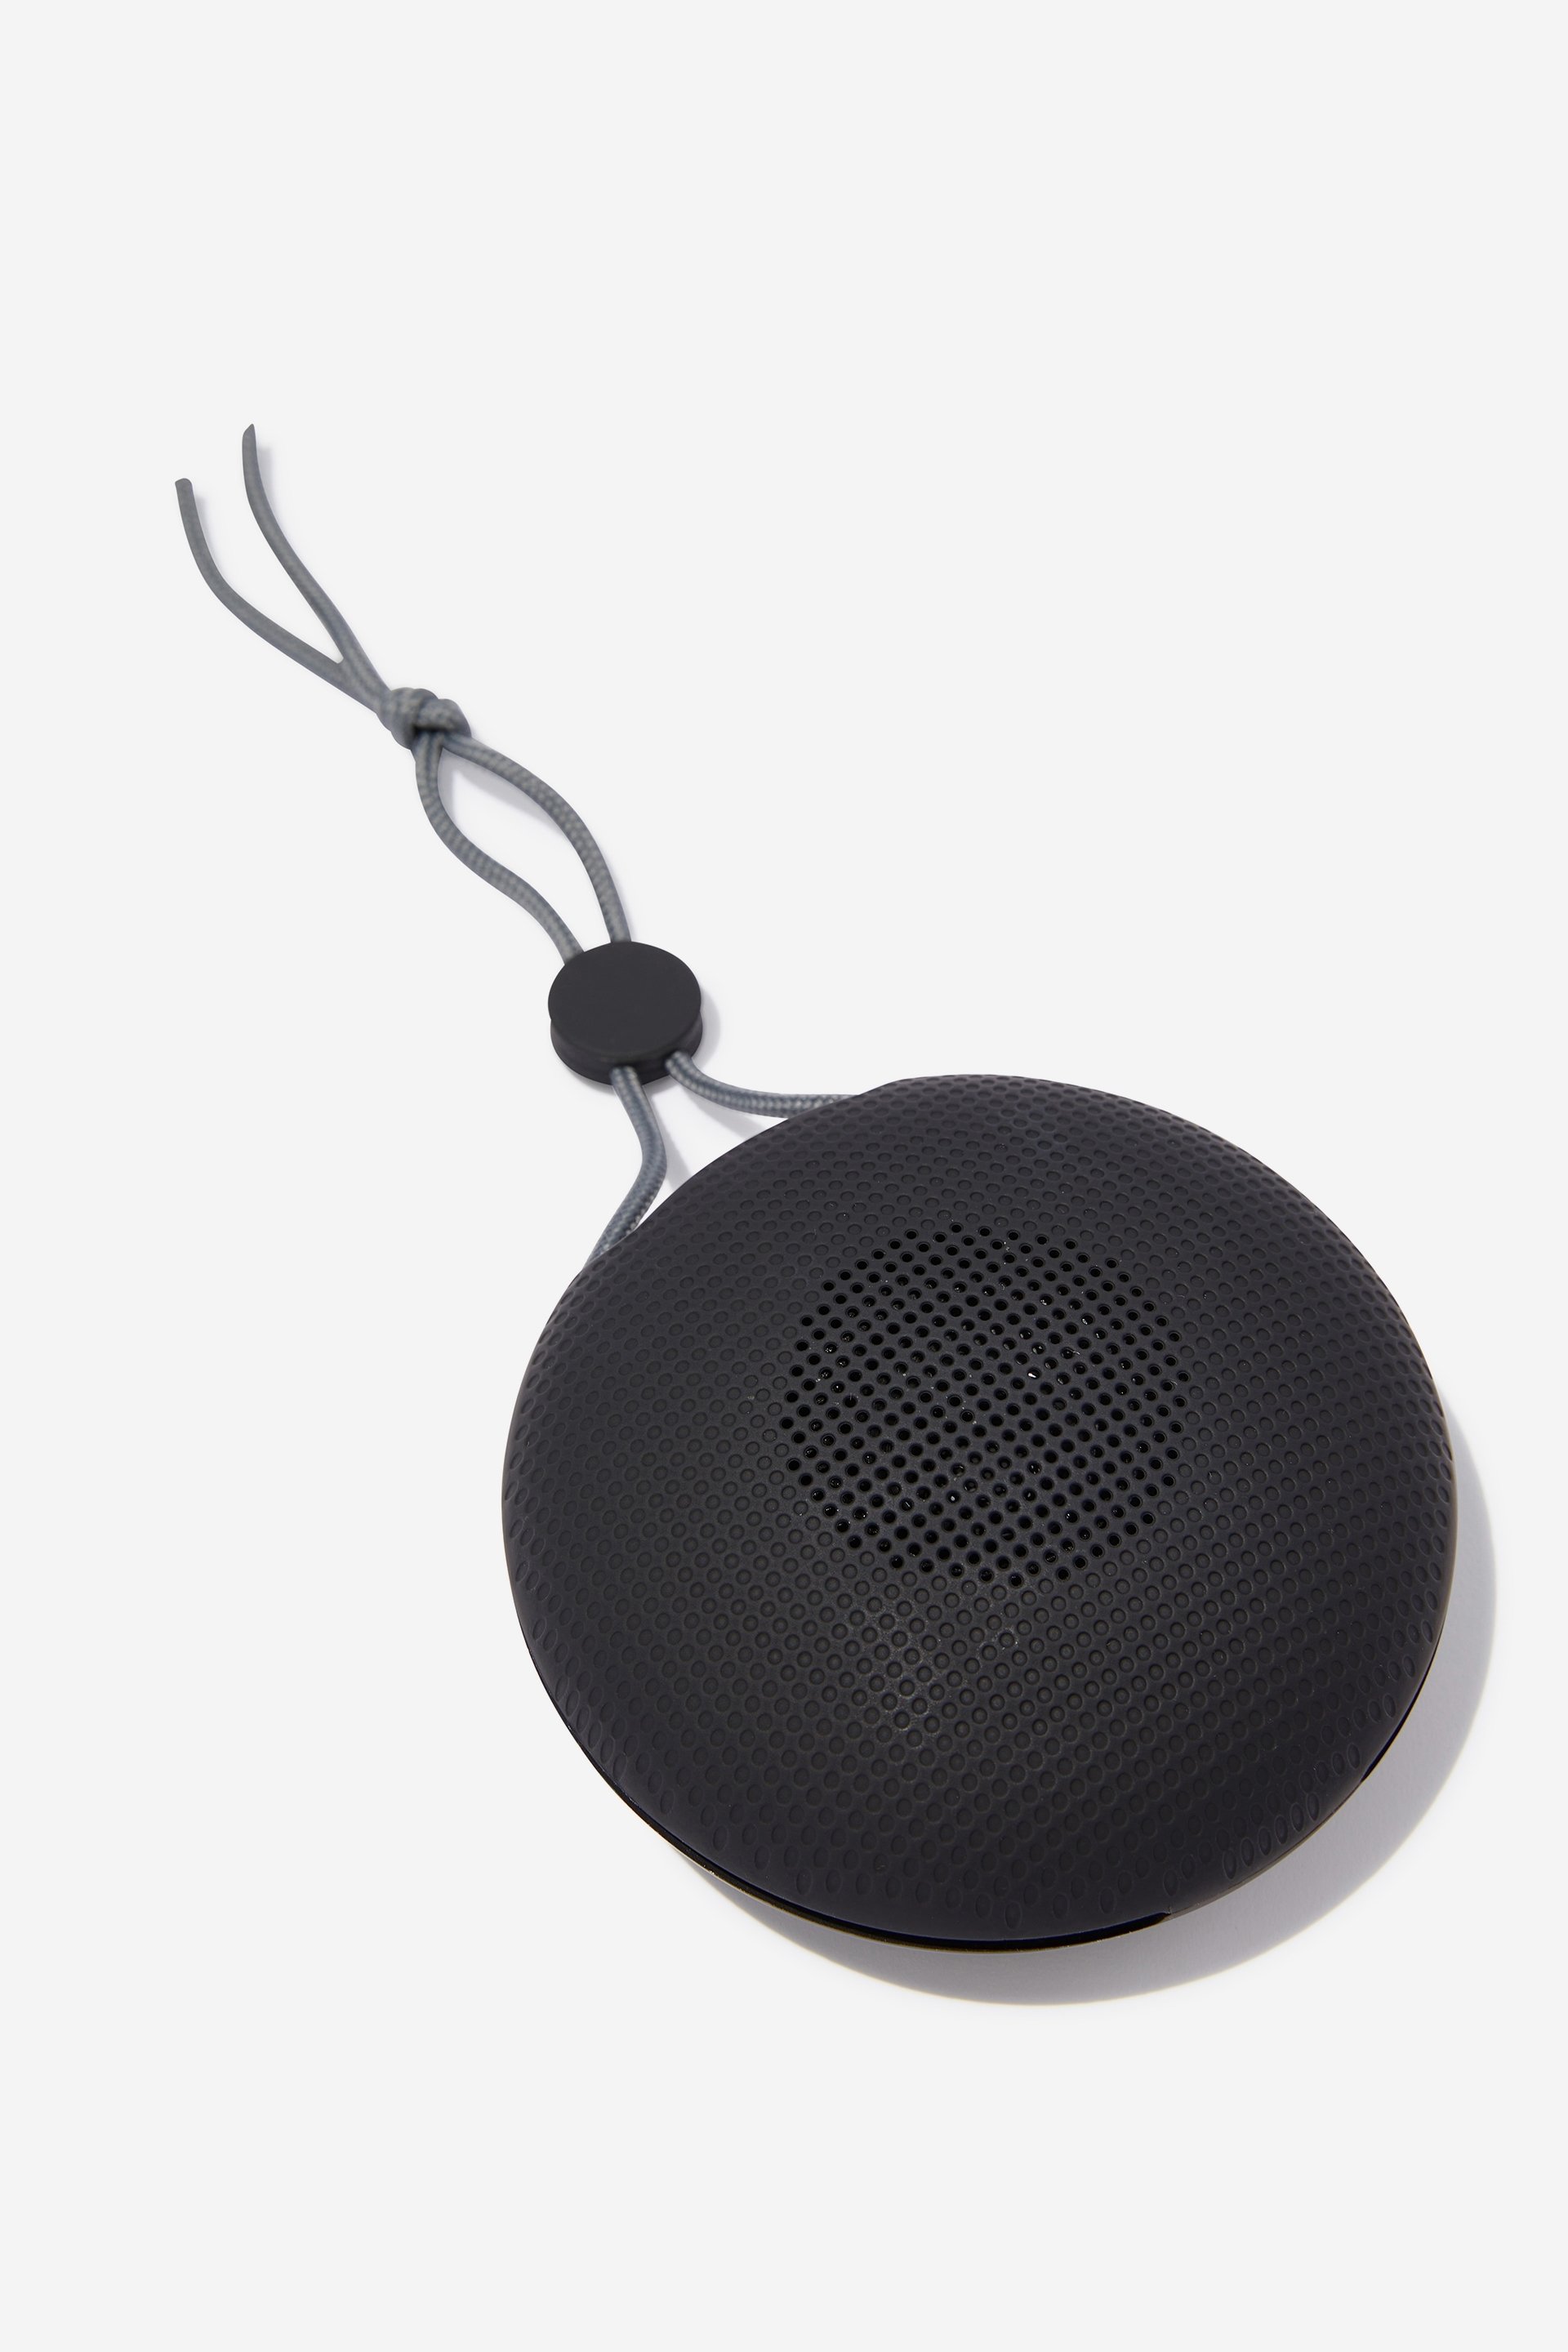 Typo - Soundvibe Waterproof Wireless Speaker - Black